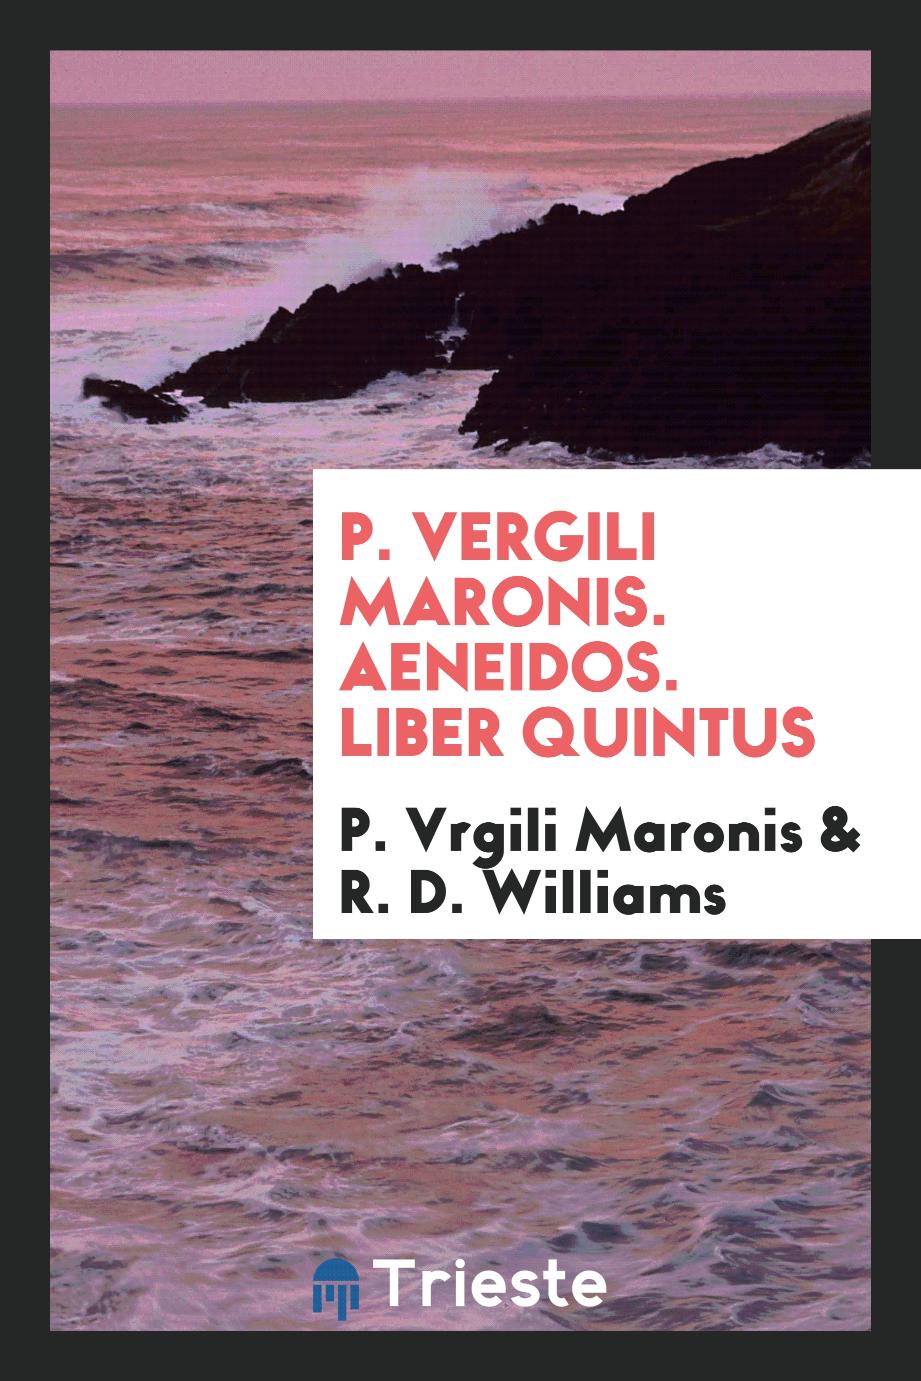 P. Vergili Maronis. Aeneidos. Liber quintus